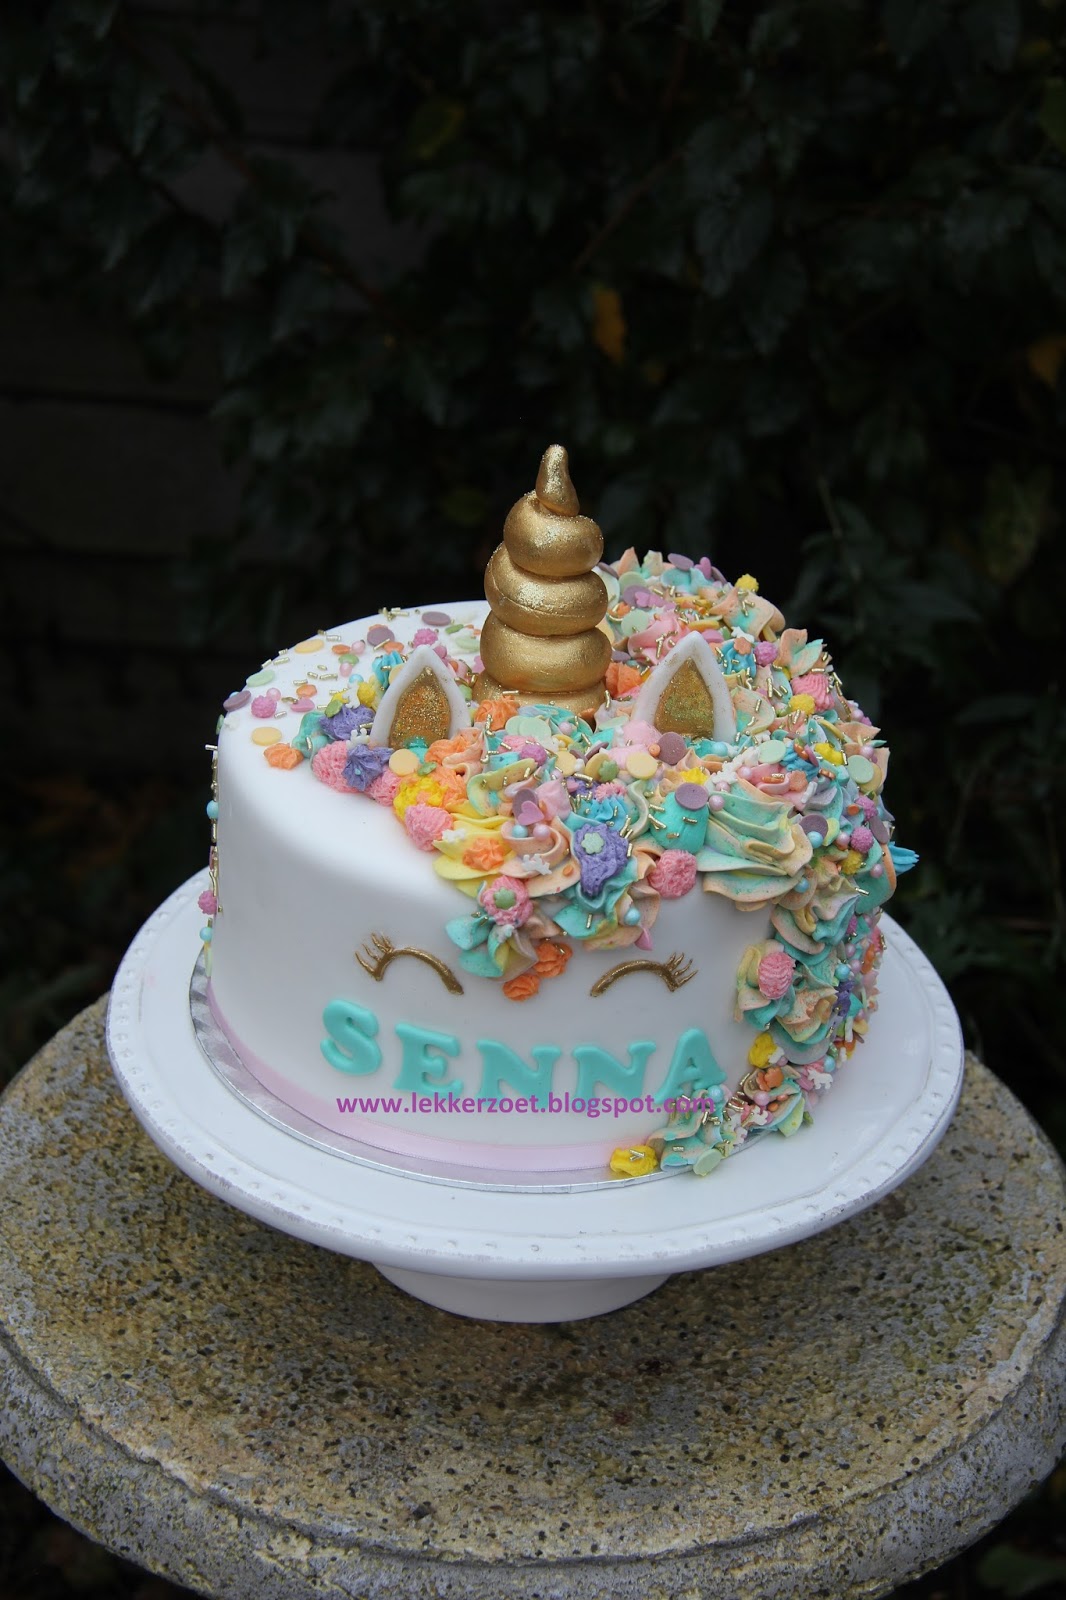 Beste lekker zoet: eenhorn taart voor Senna 10 jaar IU-88